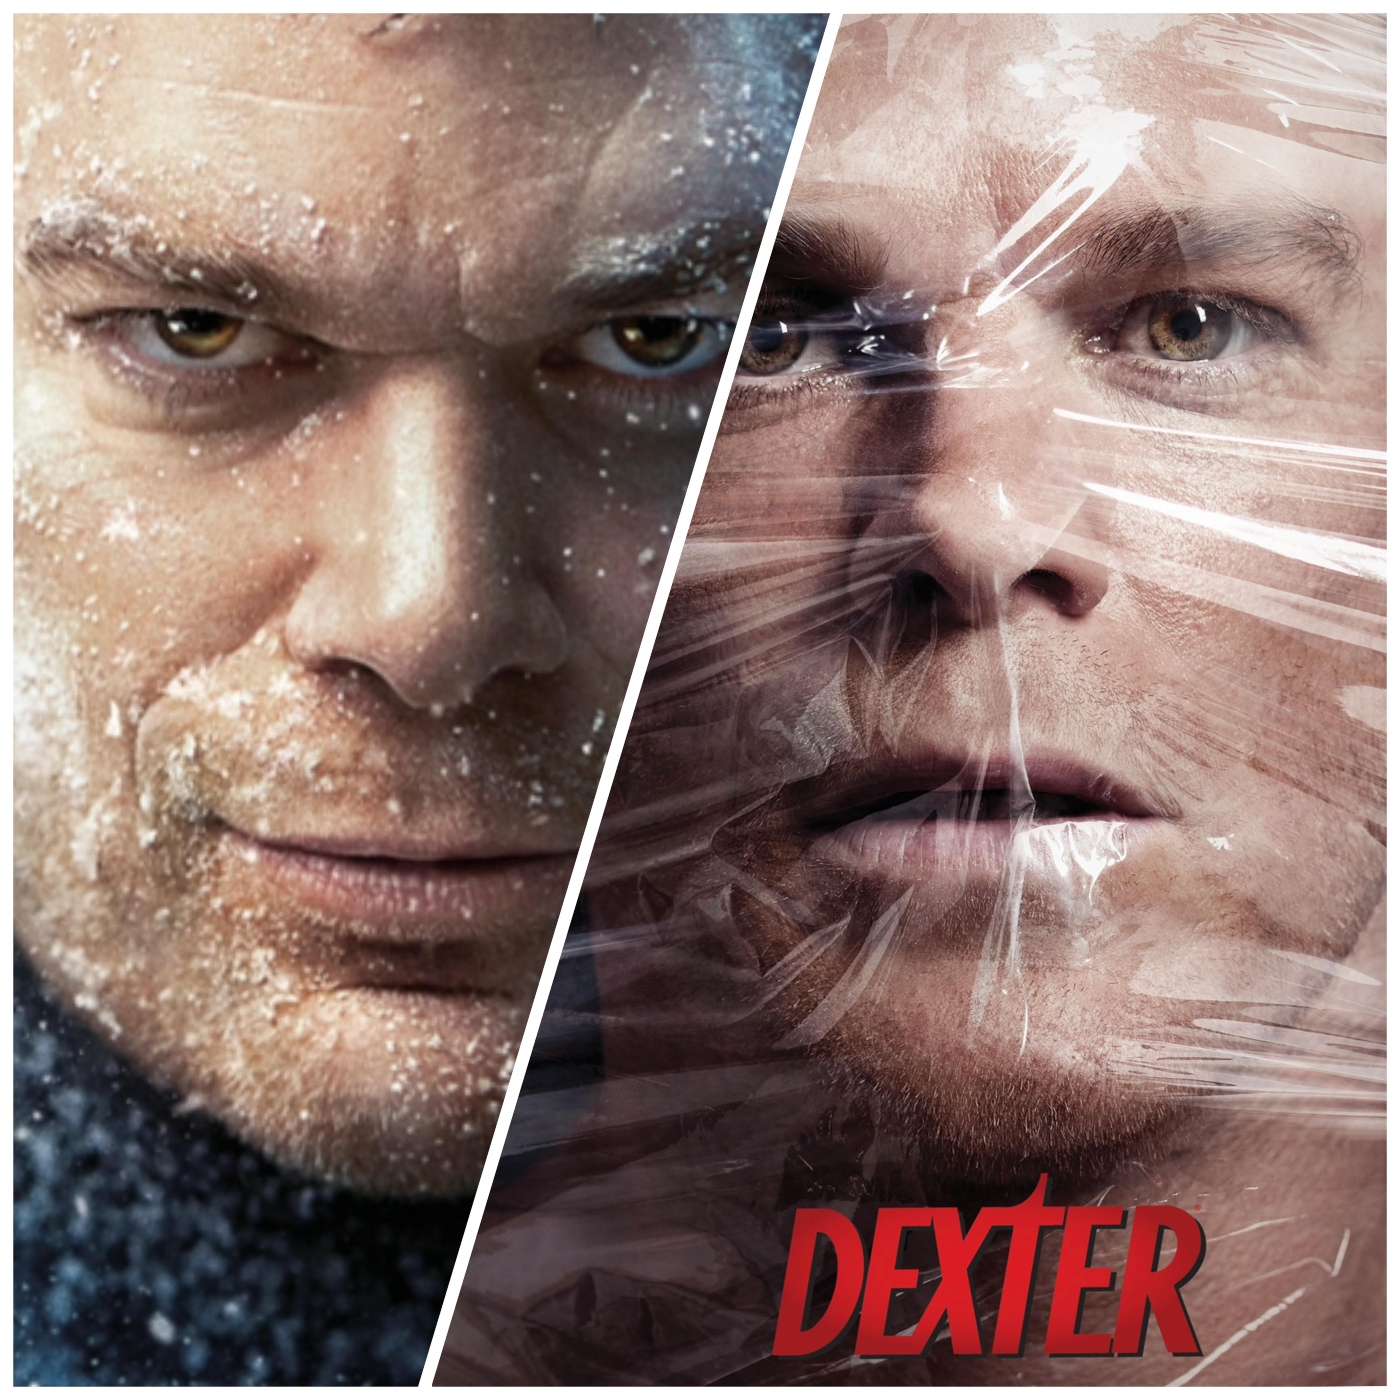 Dexter Recap + Season 9 Review - مسلسل دكستر المواسم السابقة وحلقة الموسم الجديد